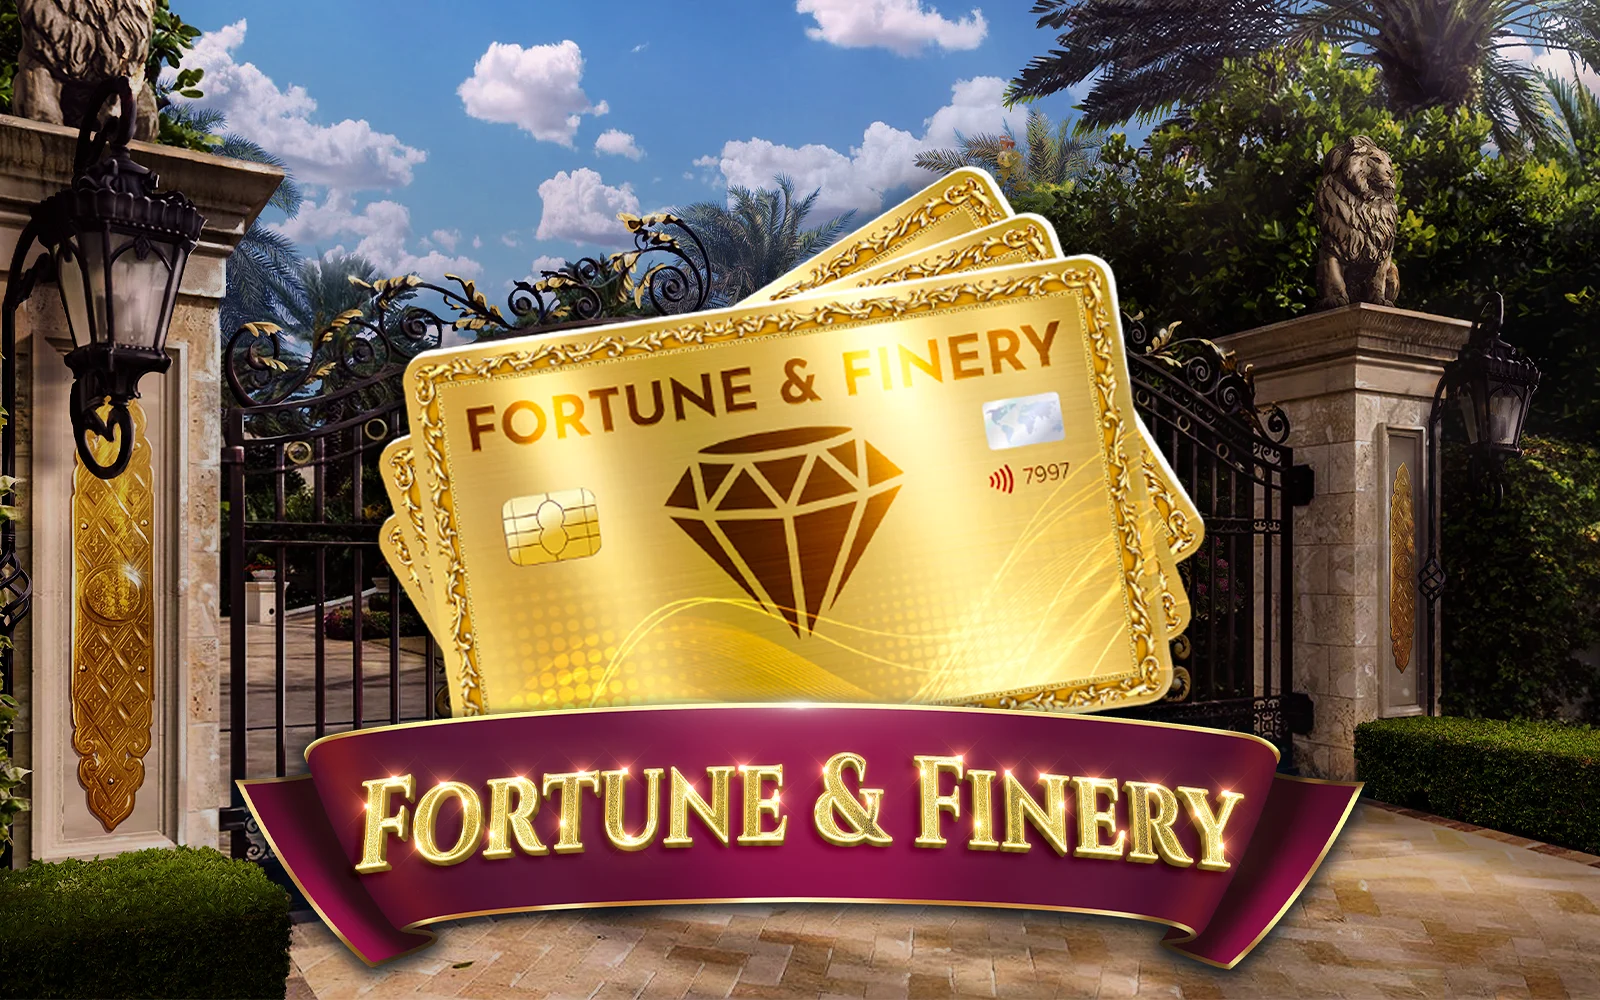 Joacă Fortune & Finery în cazinoul online Starcasino.be